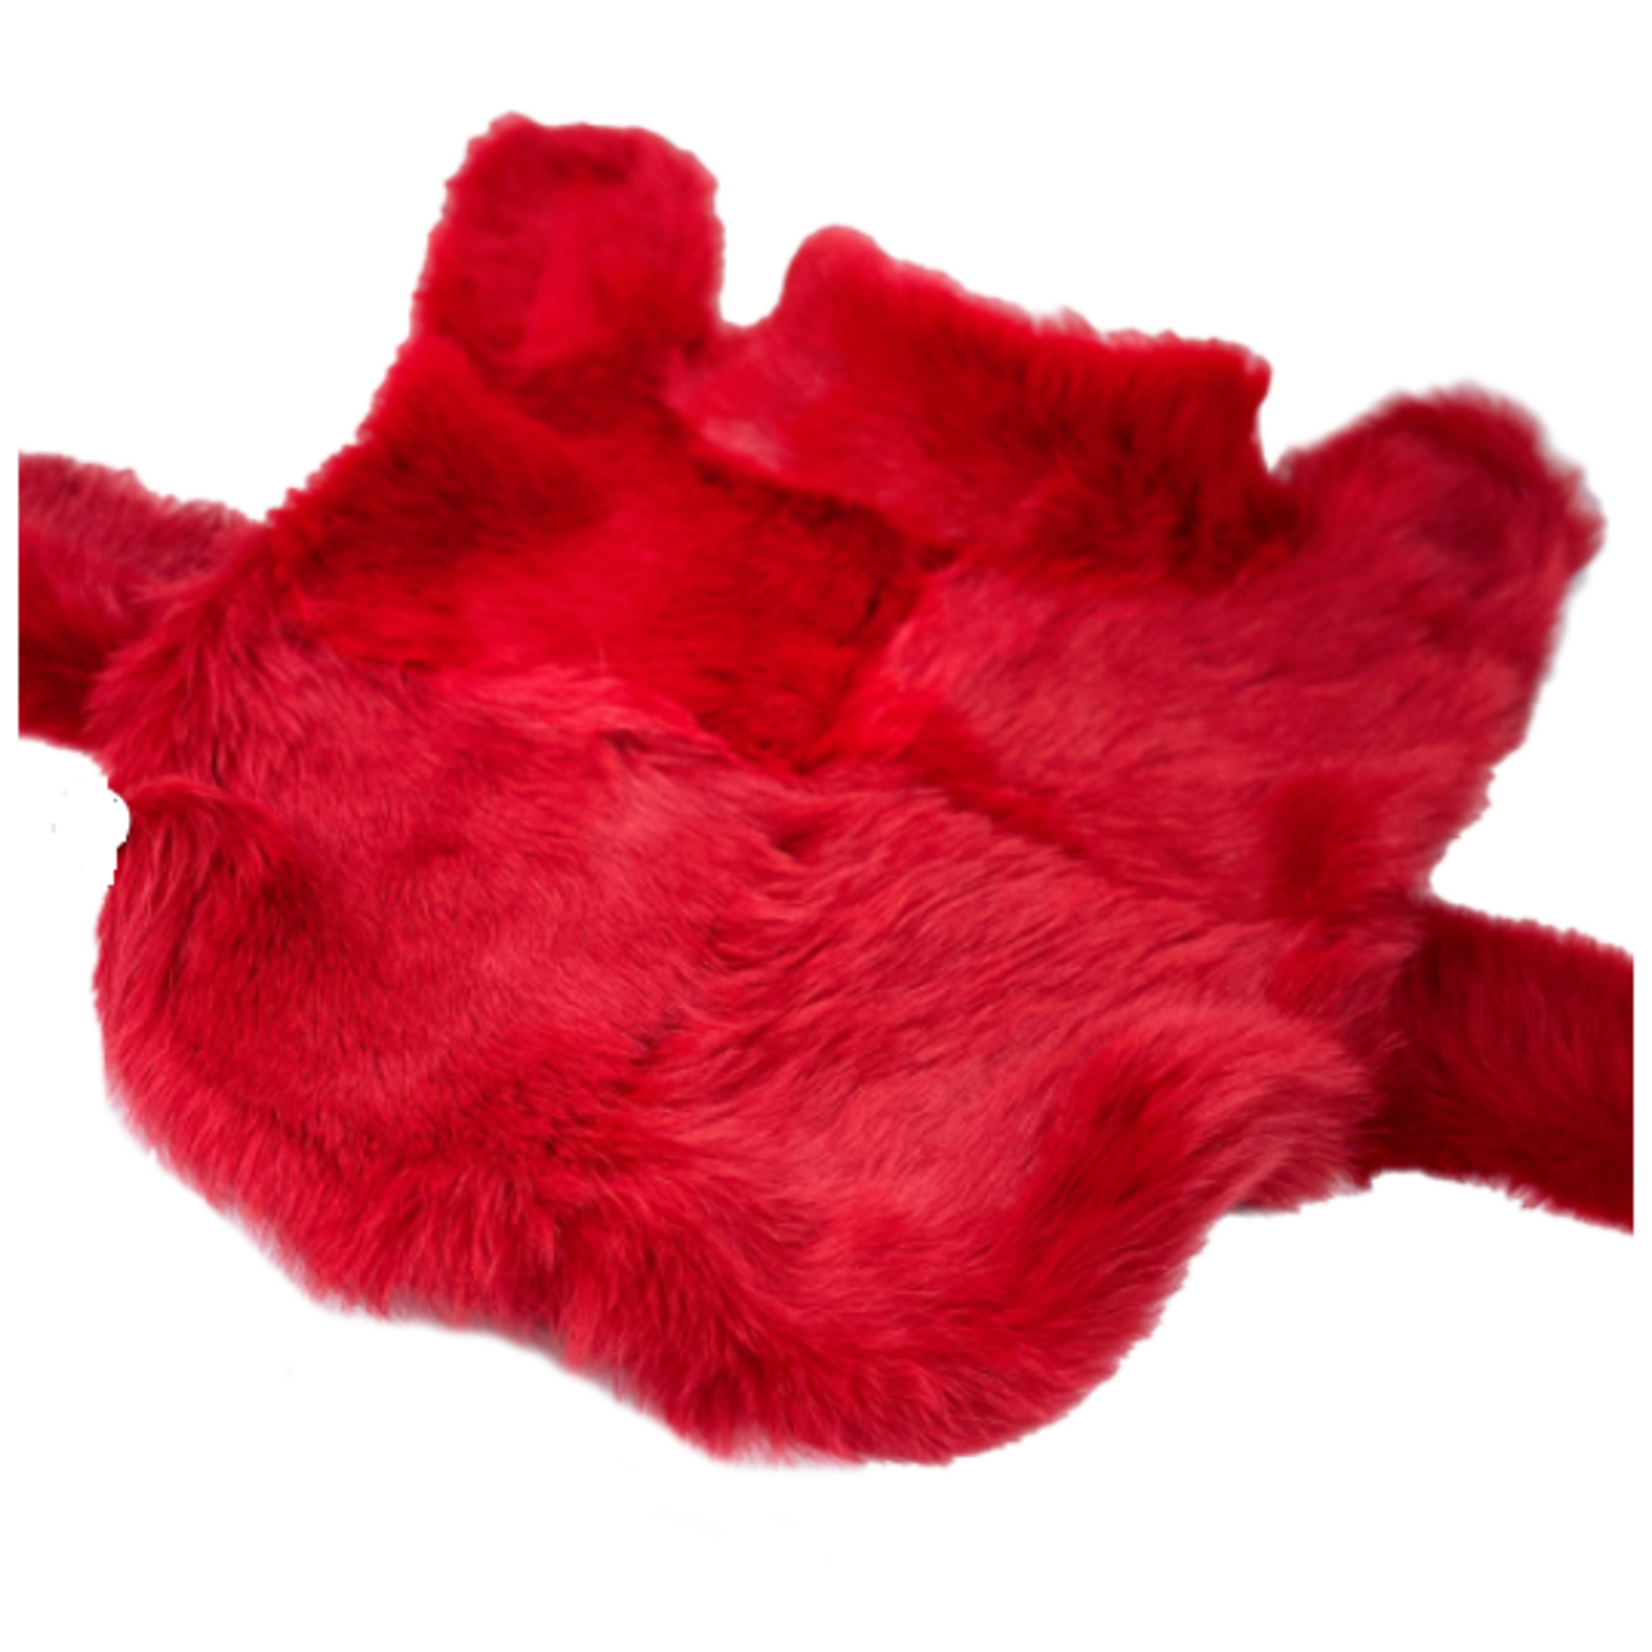 Hartman & Rose Manteau rouge à poils long en peau de mouton - XSmall